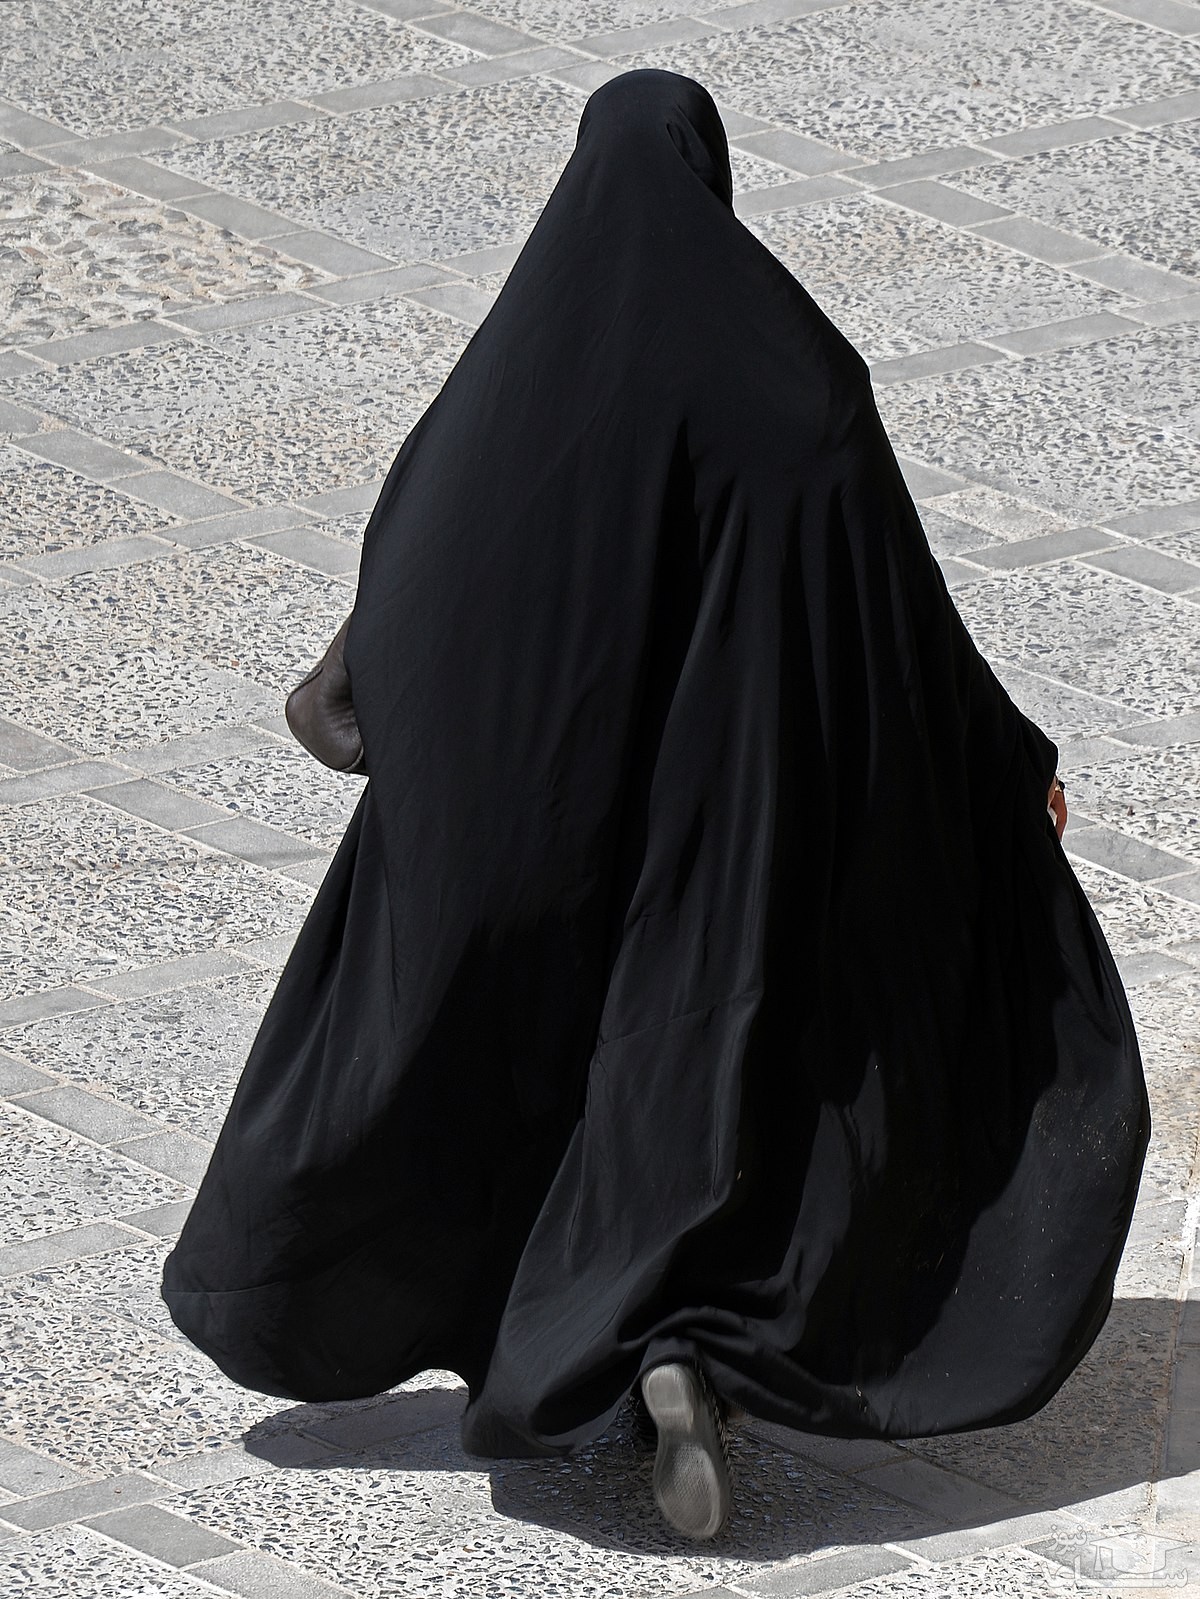 حکم ترساندن زنان چادری از راه رفتن در خیابان چیست؟